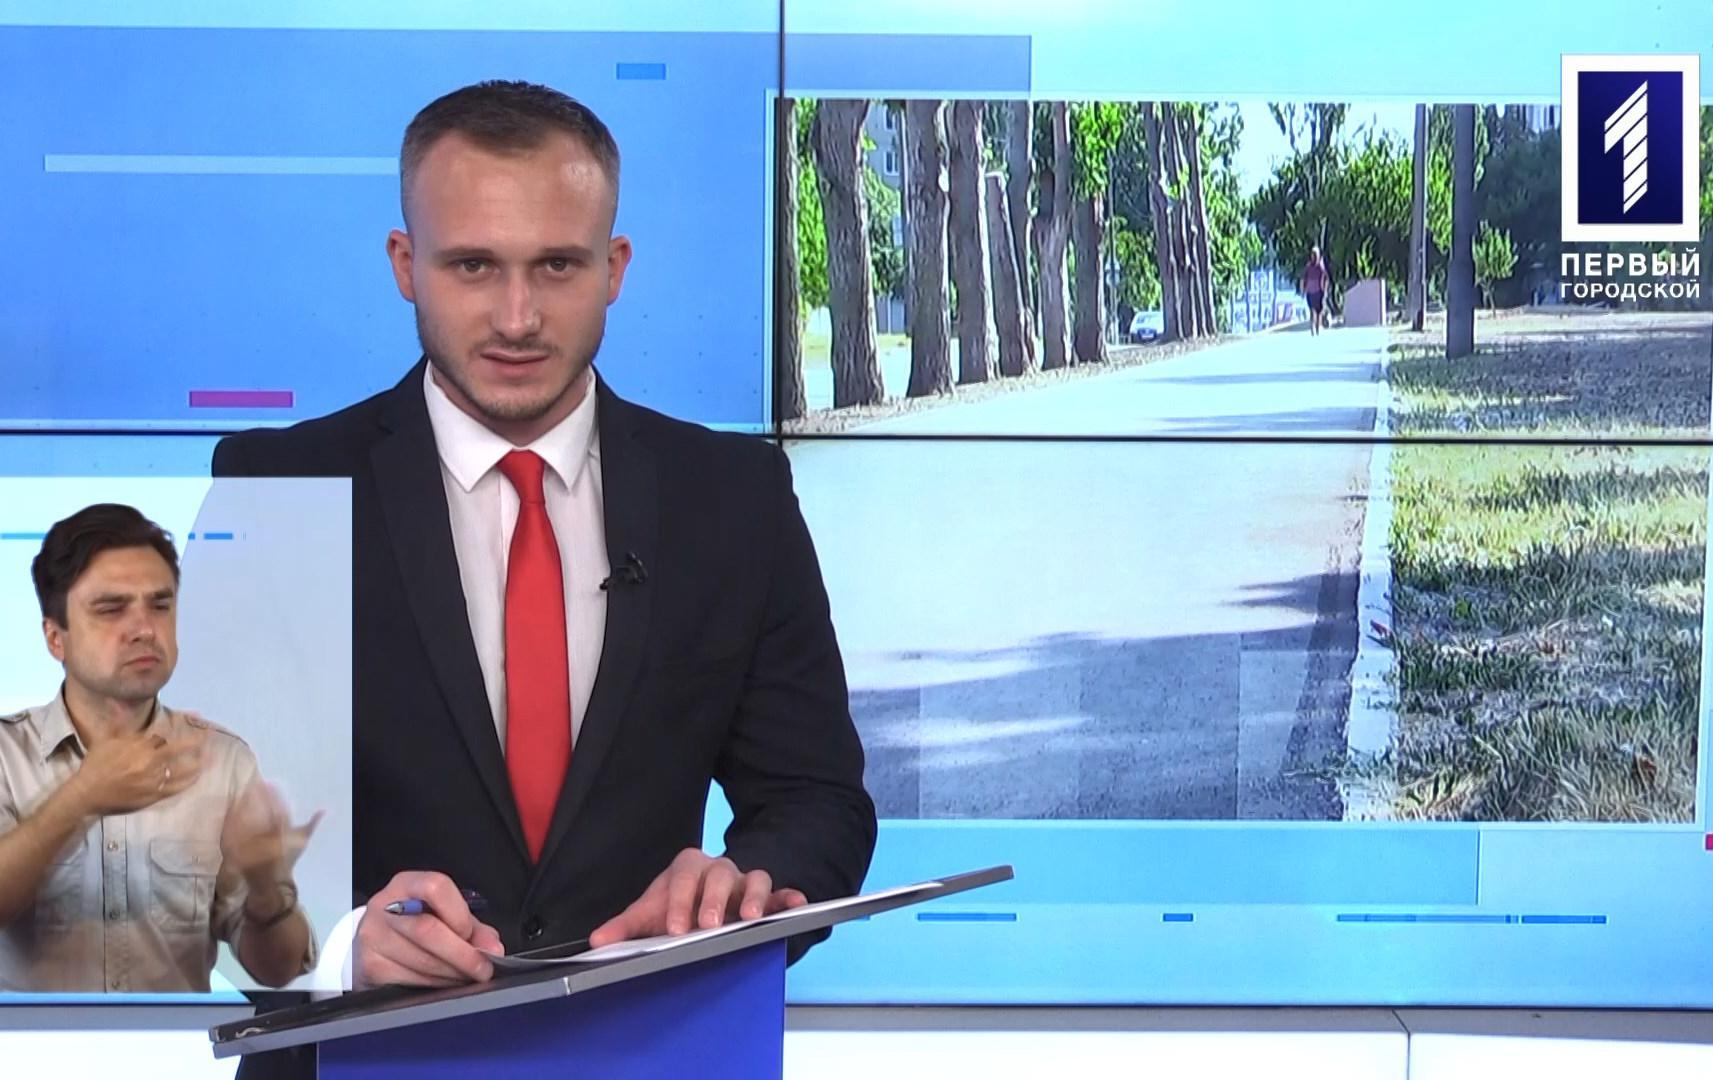 Новости Кривбасса 13 августа (сурдоперевод): «Общественный бюджет-2022», подняли флаг, пробег единства